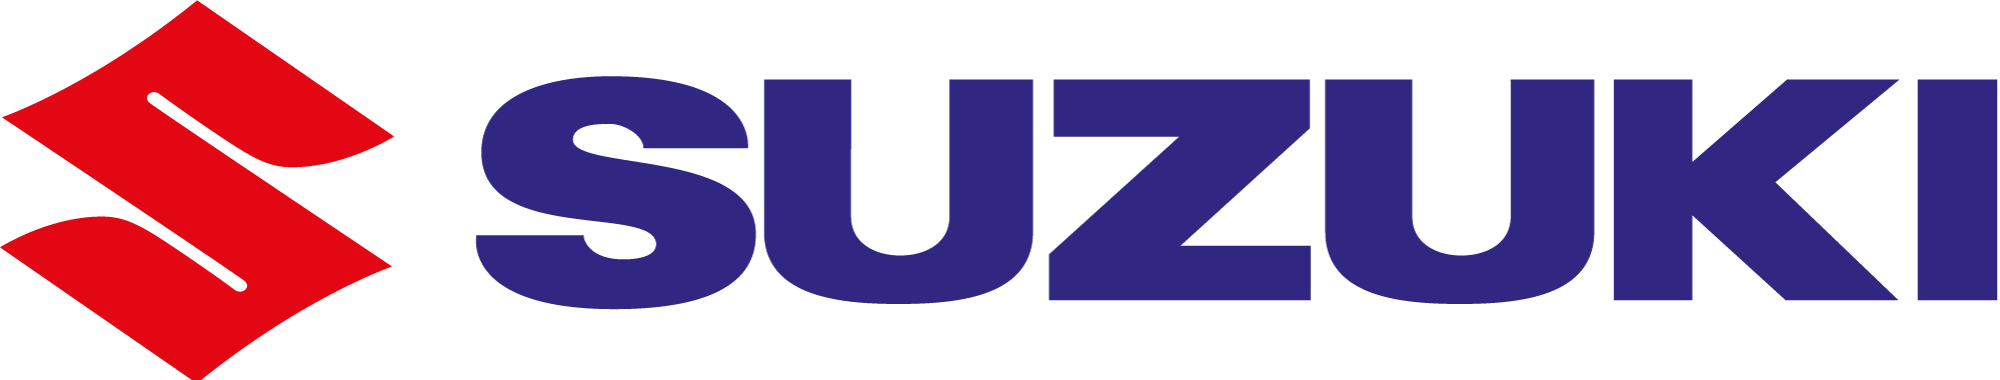 suzuki-logo-png